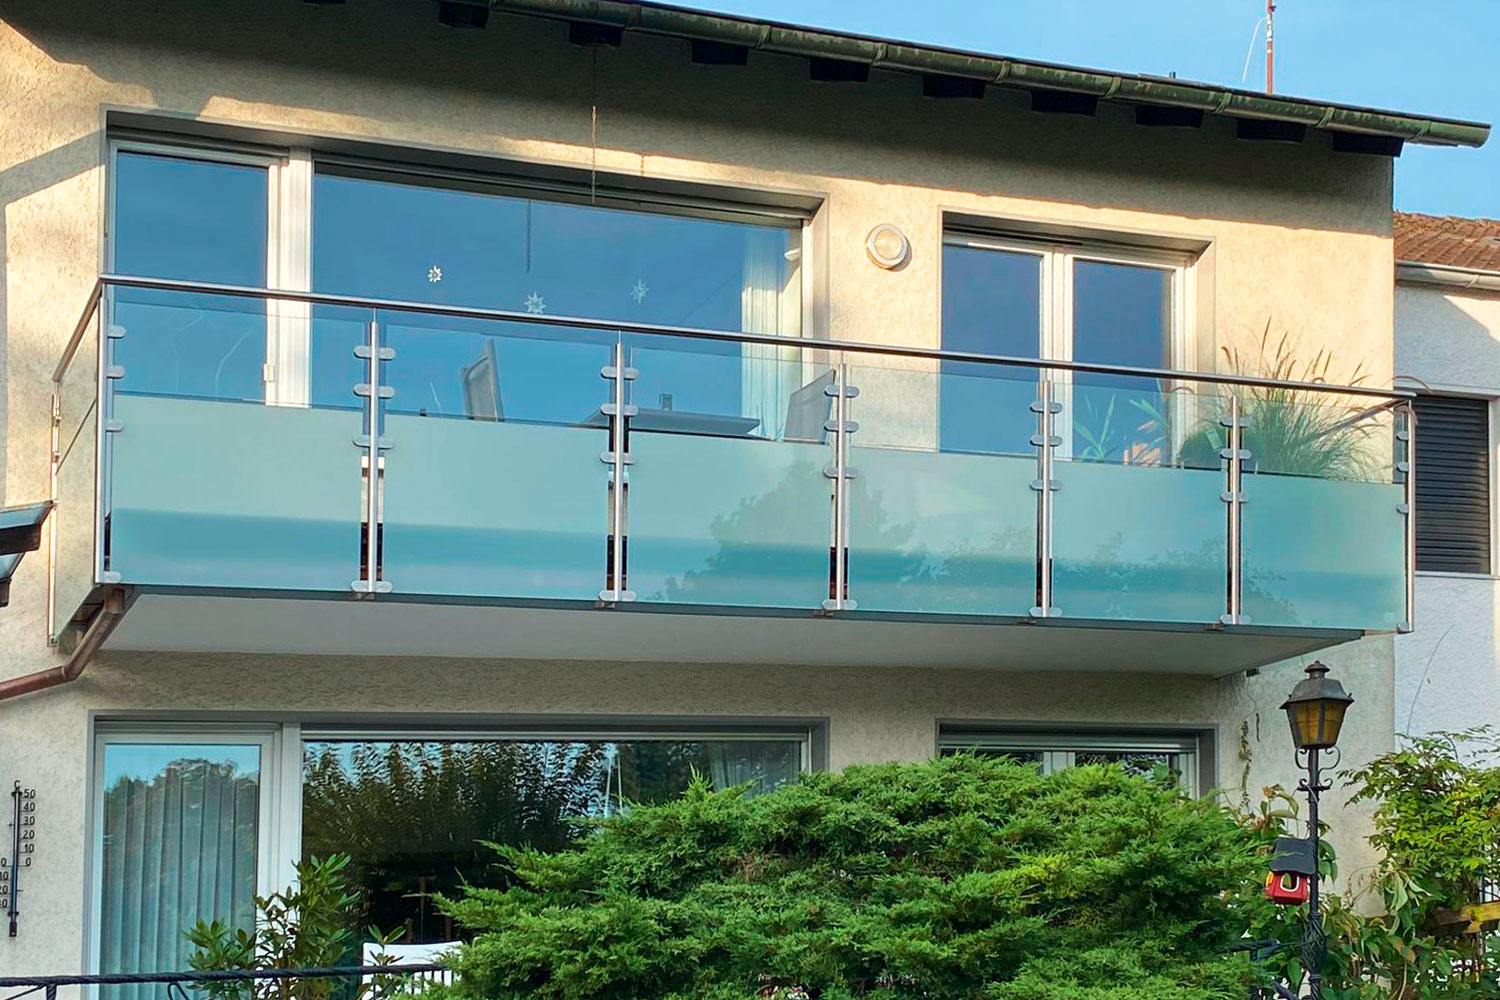 Edelstahlschlosserei Nappenfeld konzipiert und montiert in Köln ein besonderes Edelstahlgeländer mit Glas